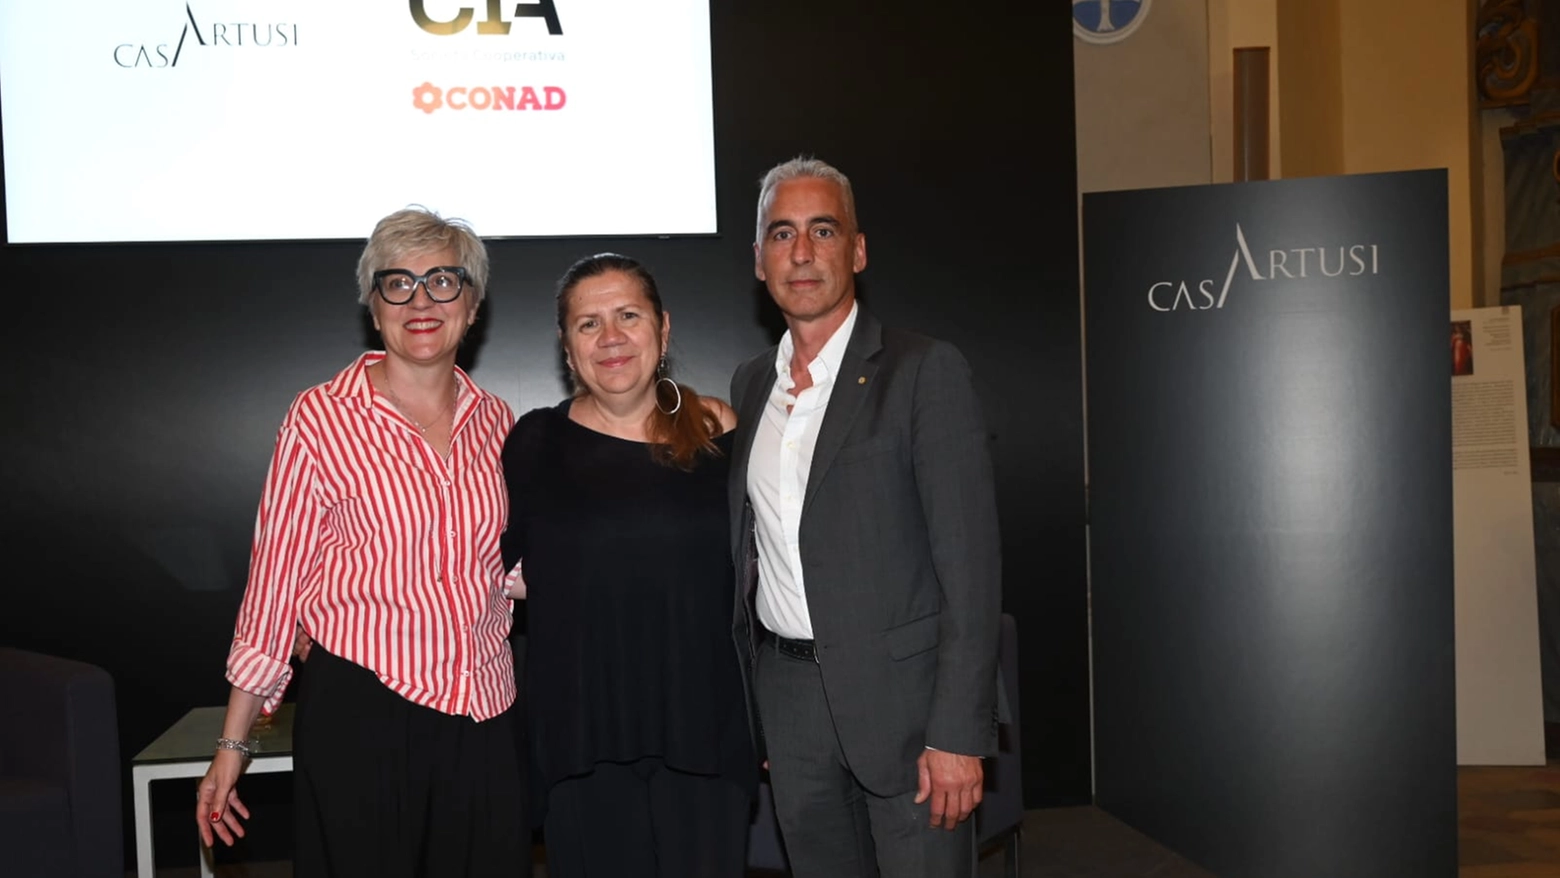 Da sinistra: Chiara Galbiati, presidente di Casa Artusi, Monica Fantini, presidente di SmArt, e Marco Gardini, responsabile marketing e comunicazione di Cia Conad